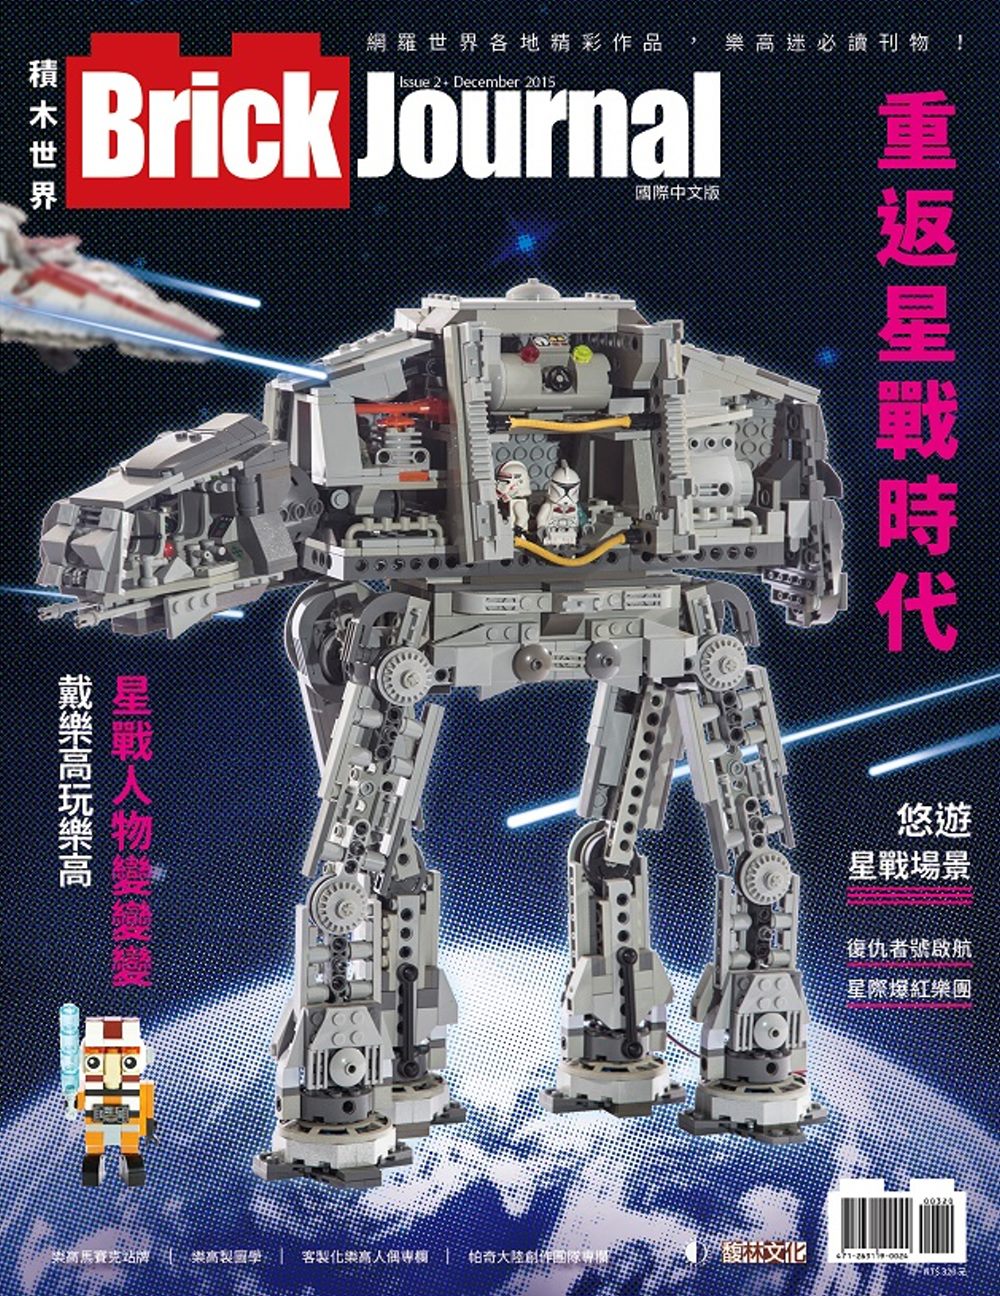 Brick Journal 積木世界 國際中文版 Issue...